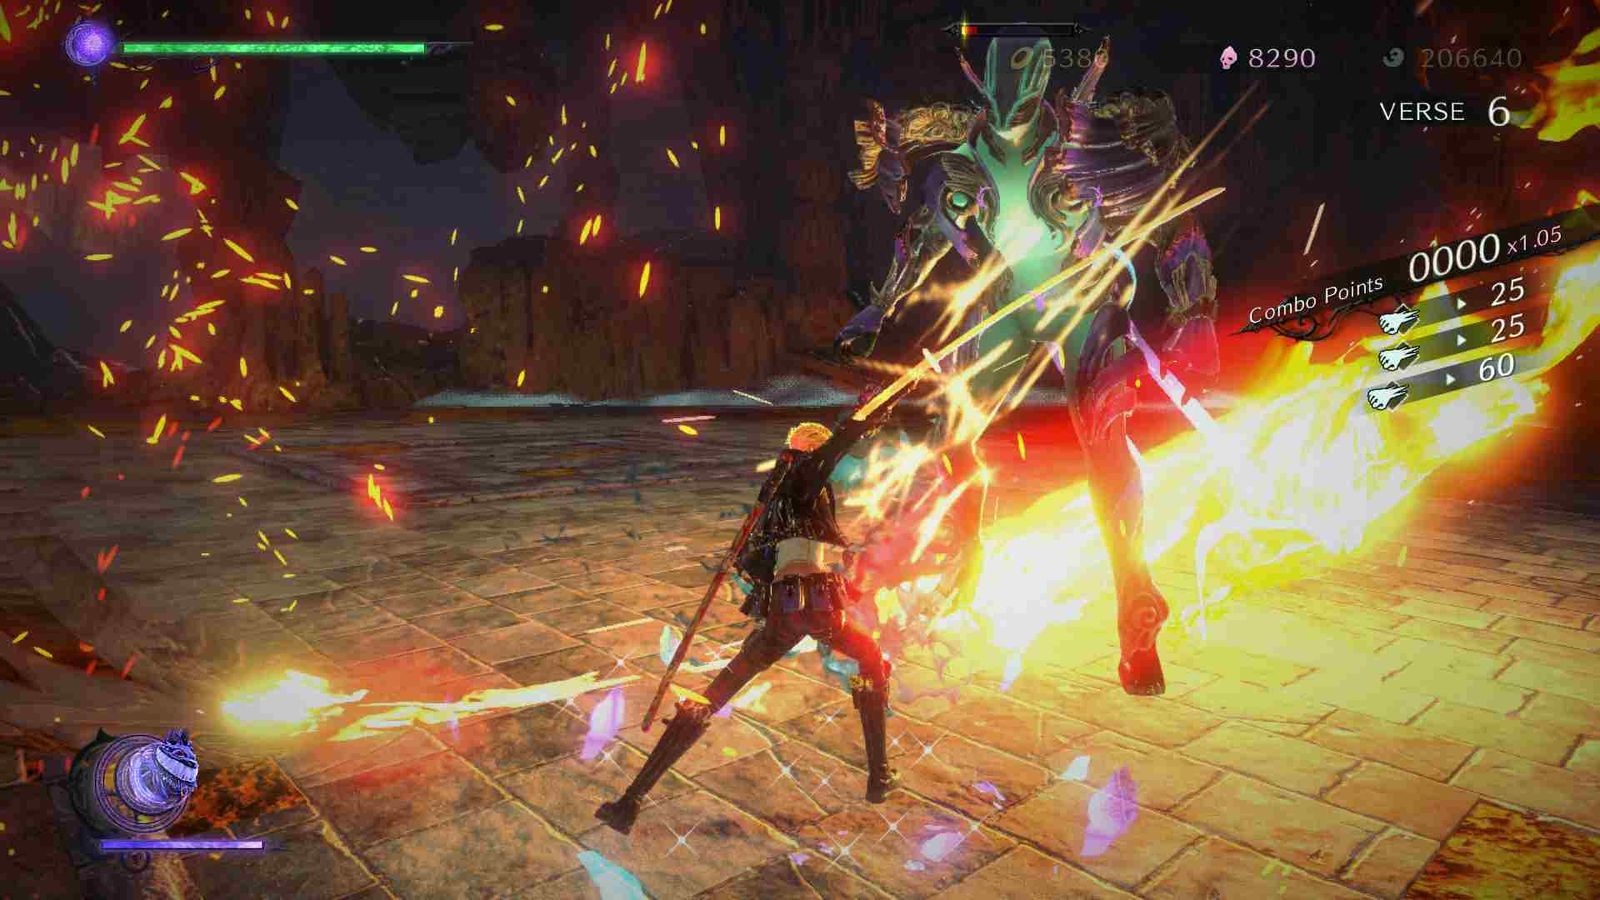 Viola fighting a giant Homunculi enemy in Bayonetta 3.